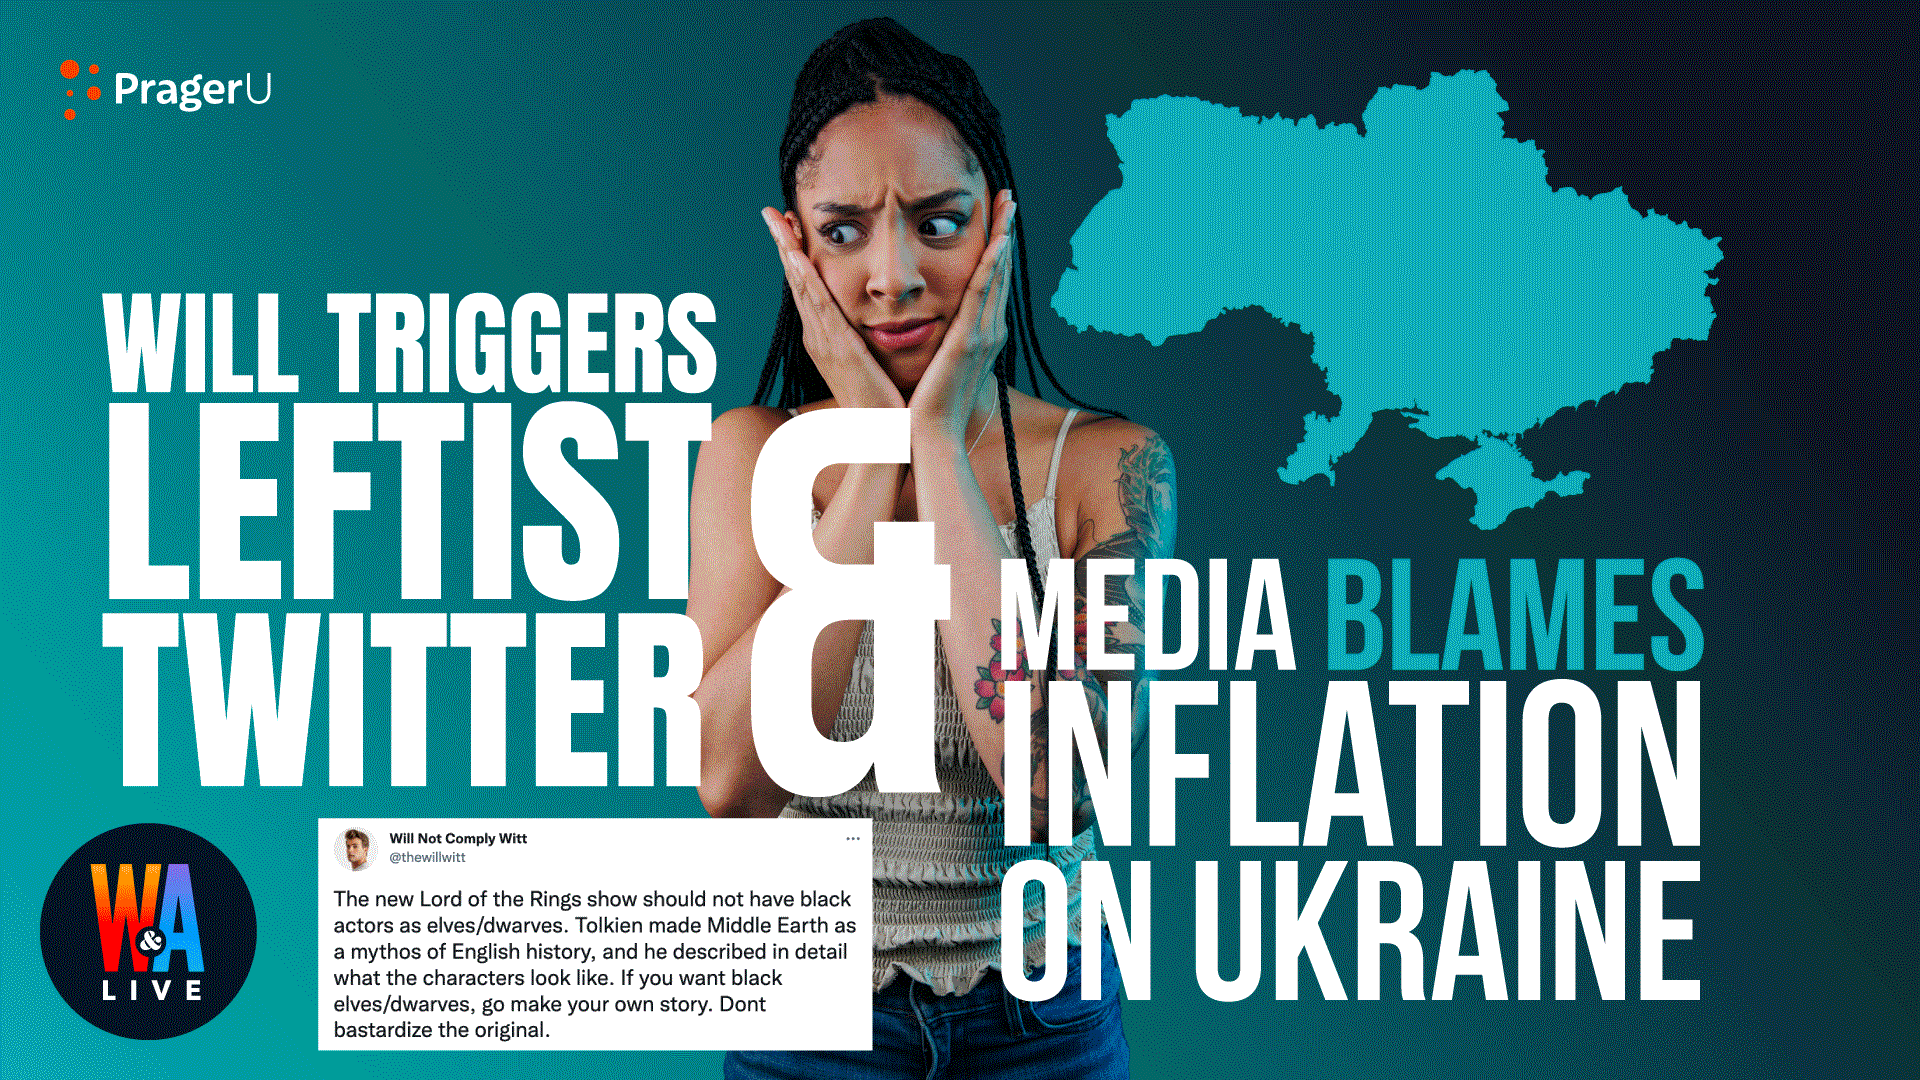 Will Triggers Leftist Twitter on LotR & Media Blames Inflation on Ukraine: 2/23/2022